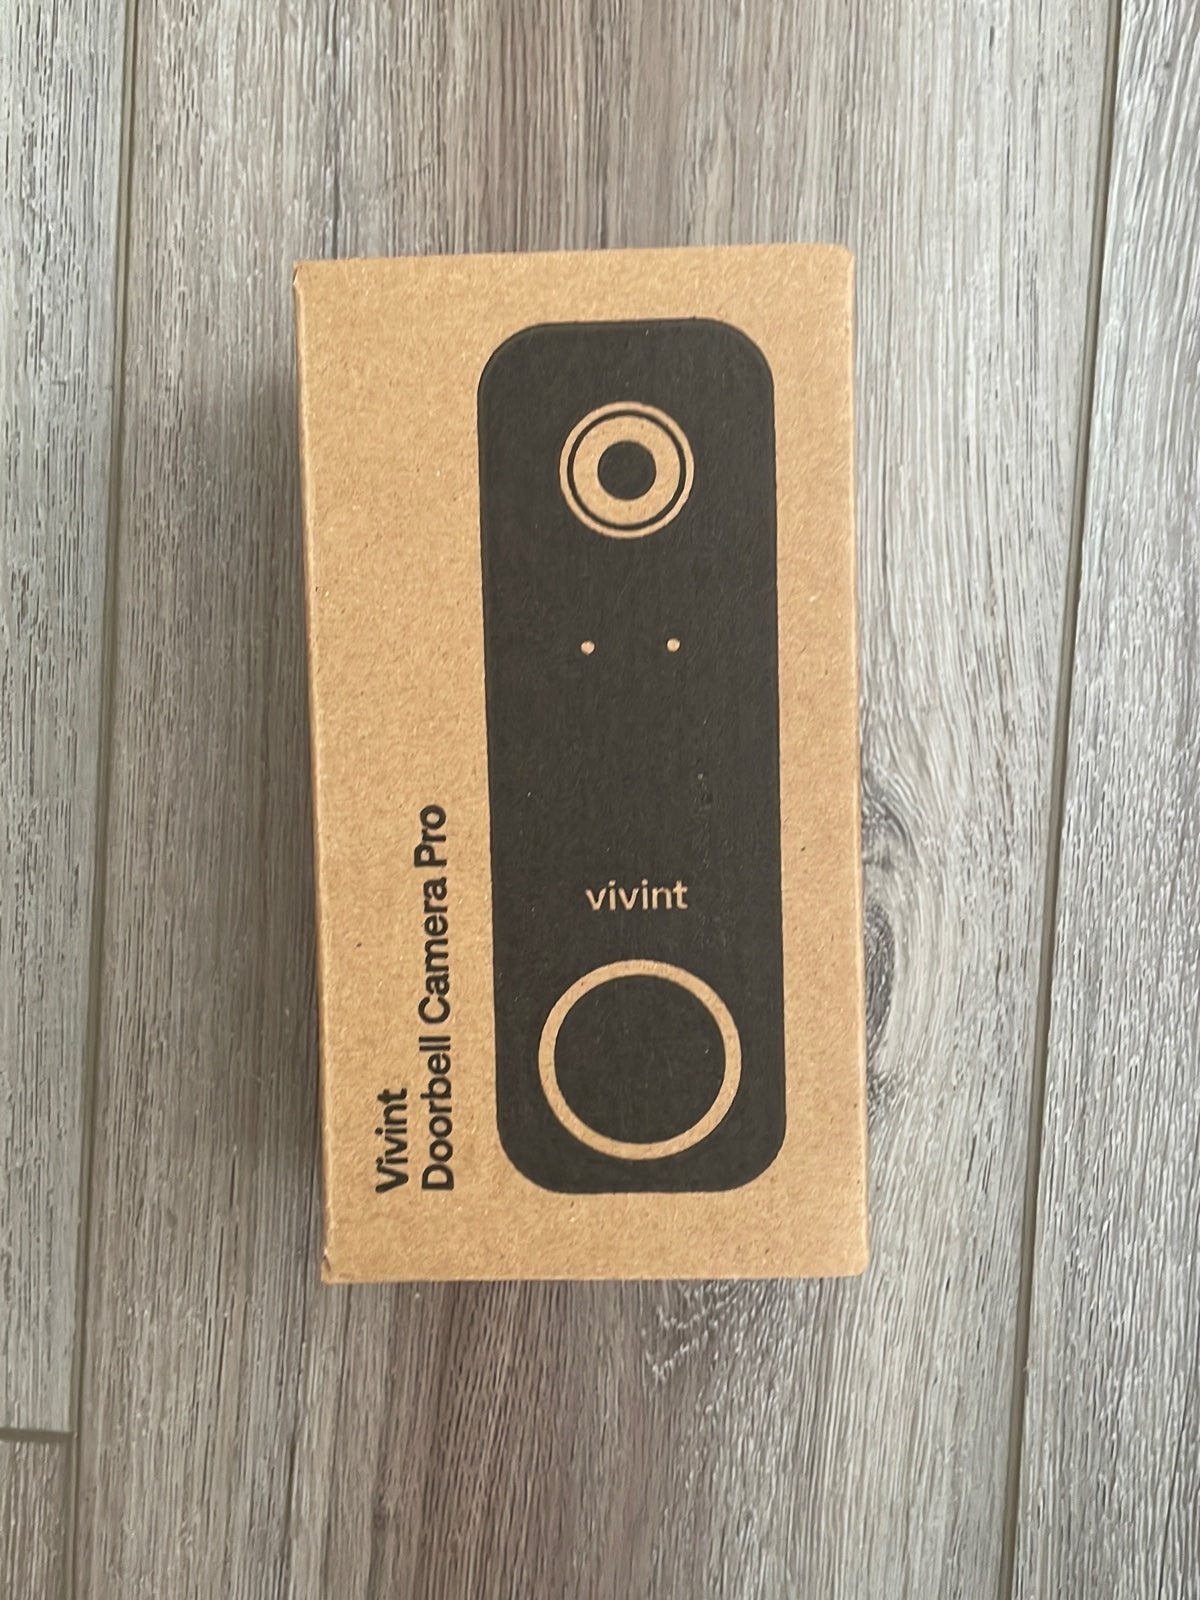 Vivint Doorbell Camera Pro Gen 2 CgJ0yeKjS